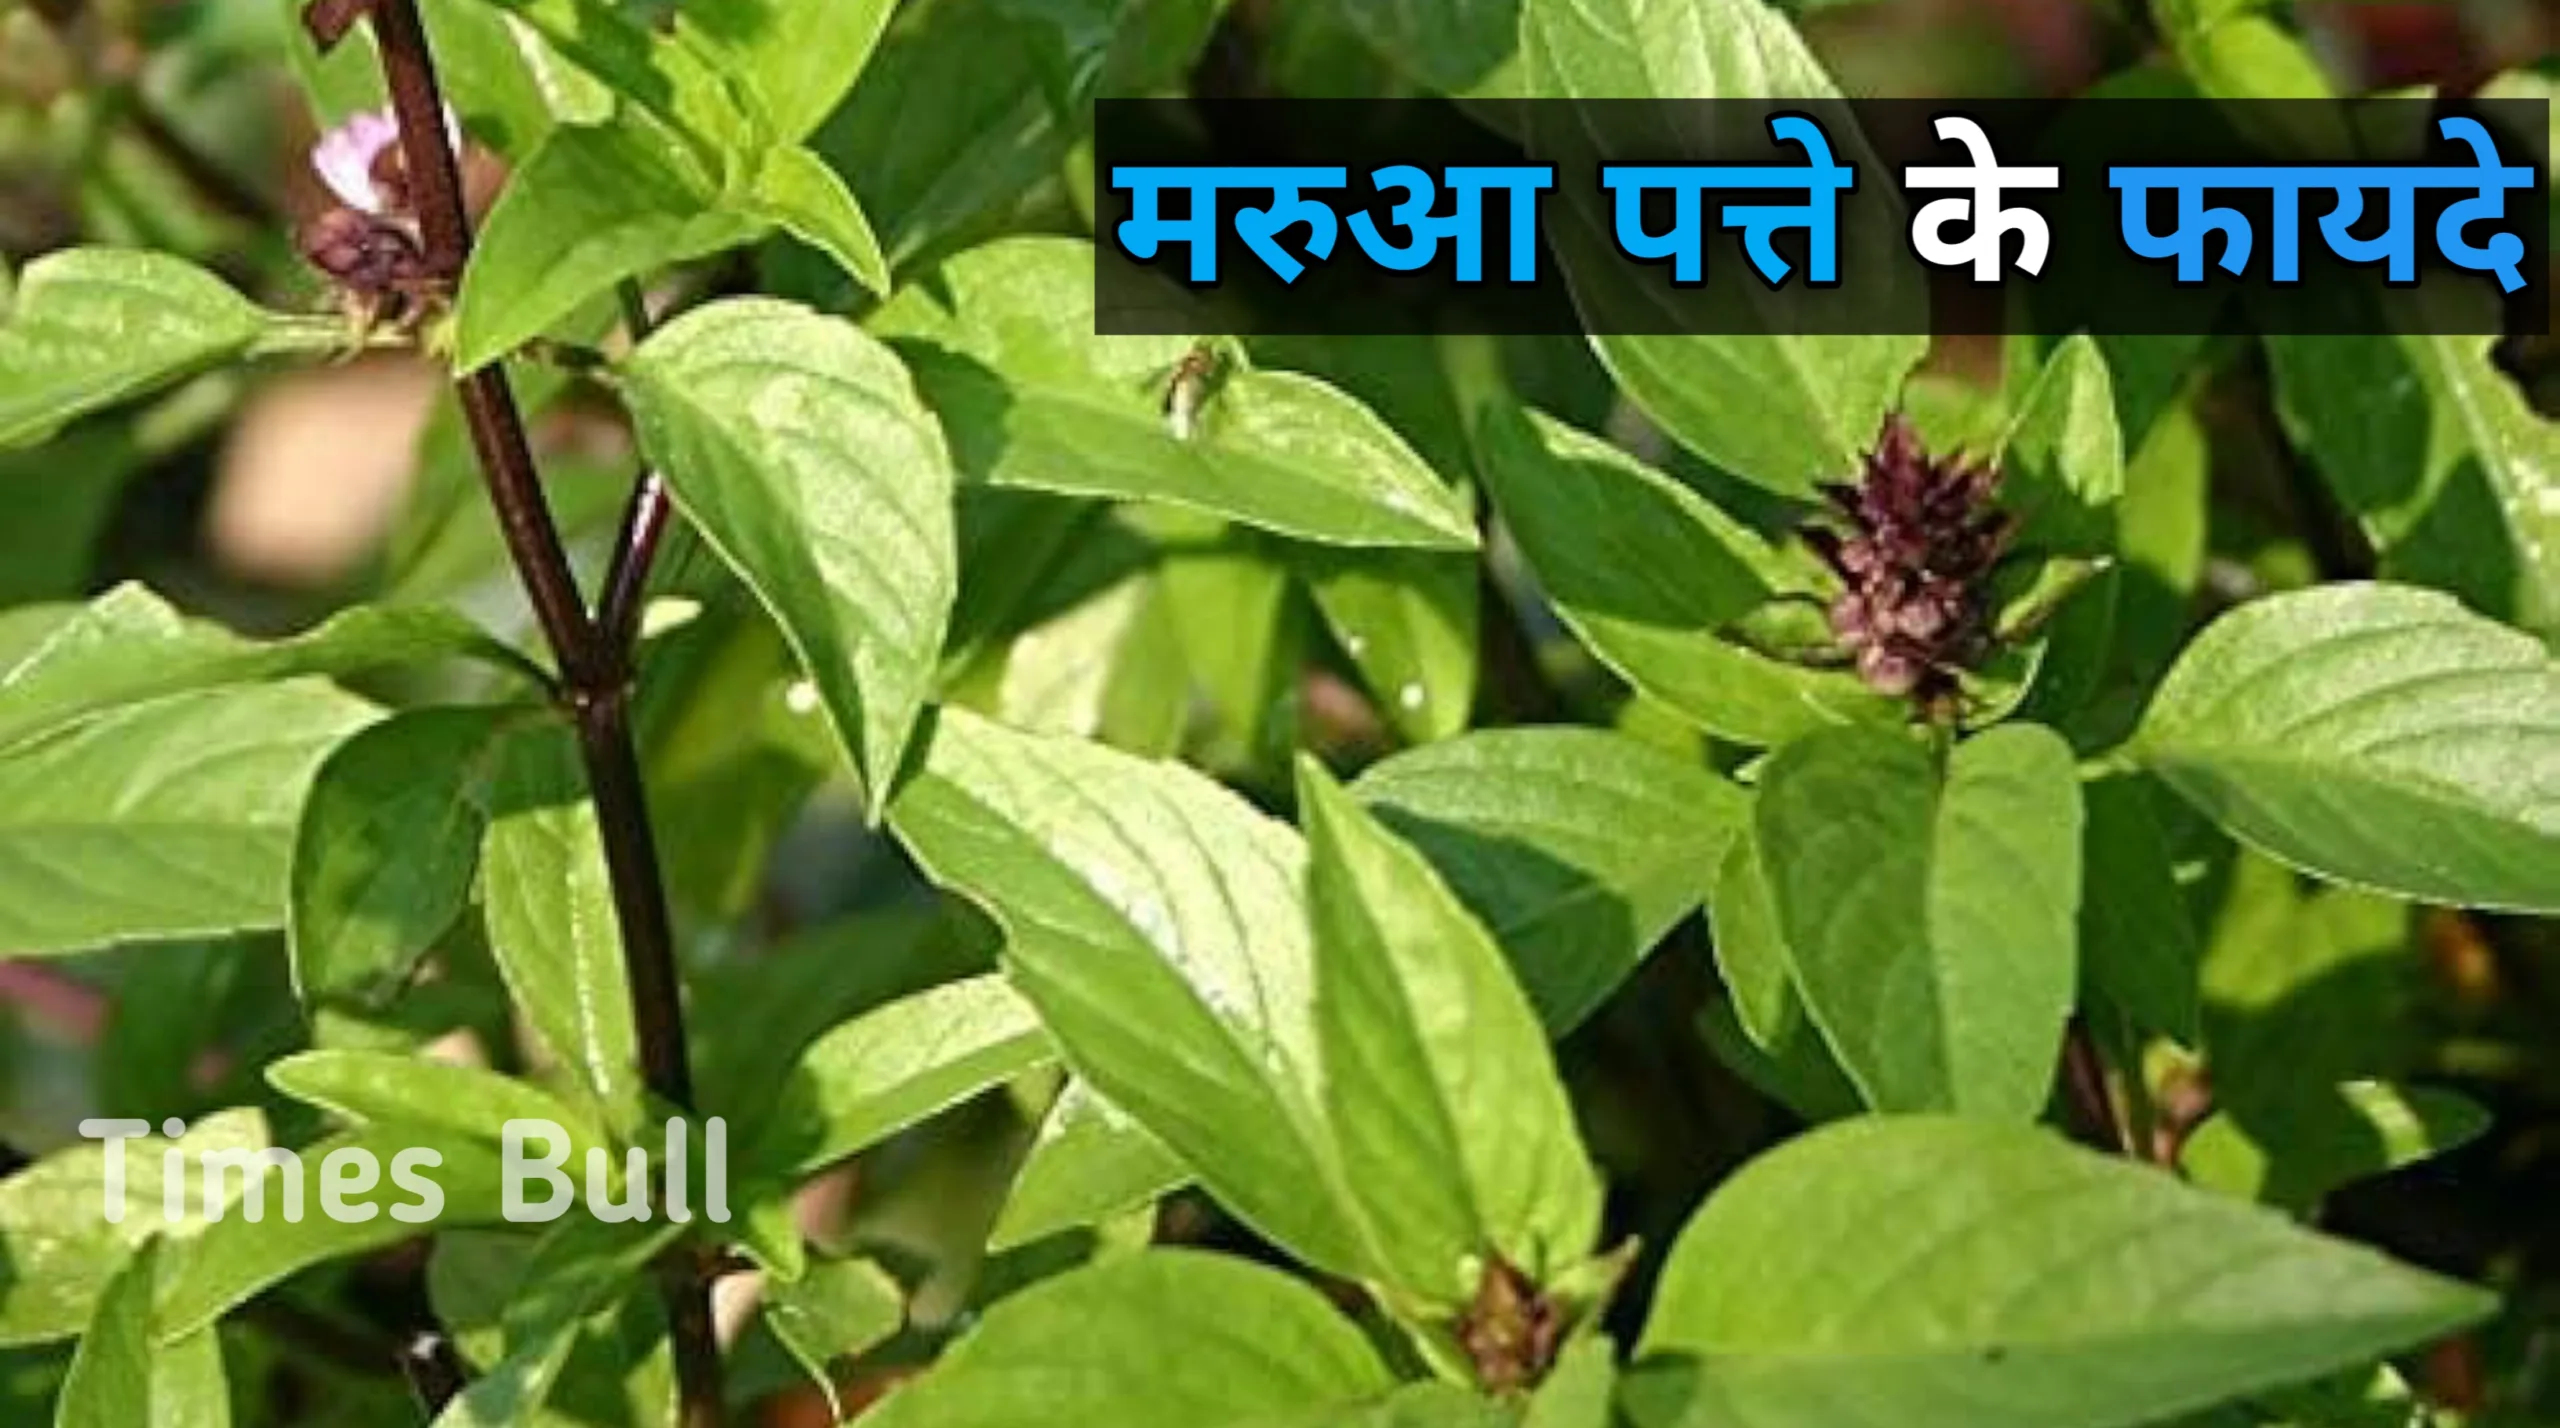 Marua Health Benefits: बढ़ते उम्र को कम करे सेवन करे ये पौधा, जानें 6 और बड़े फायदे!